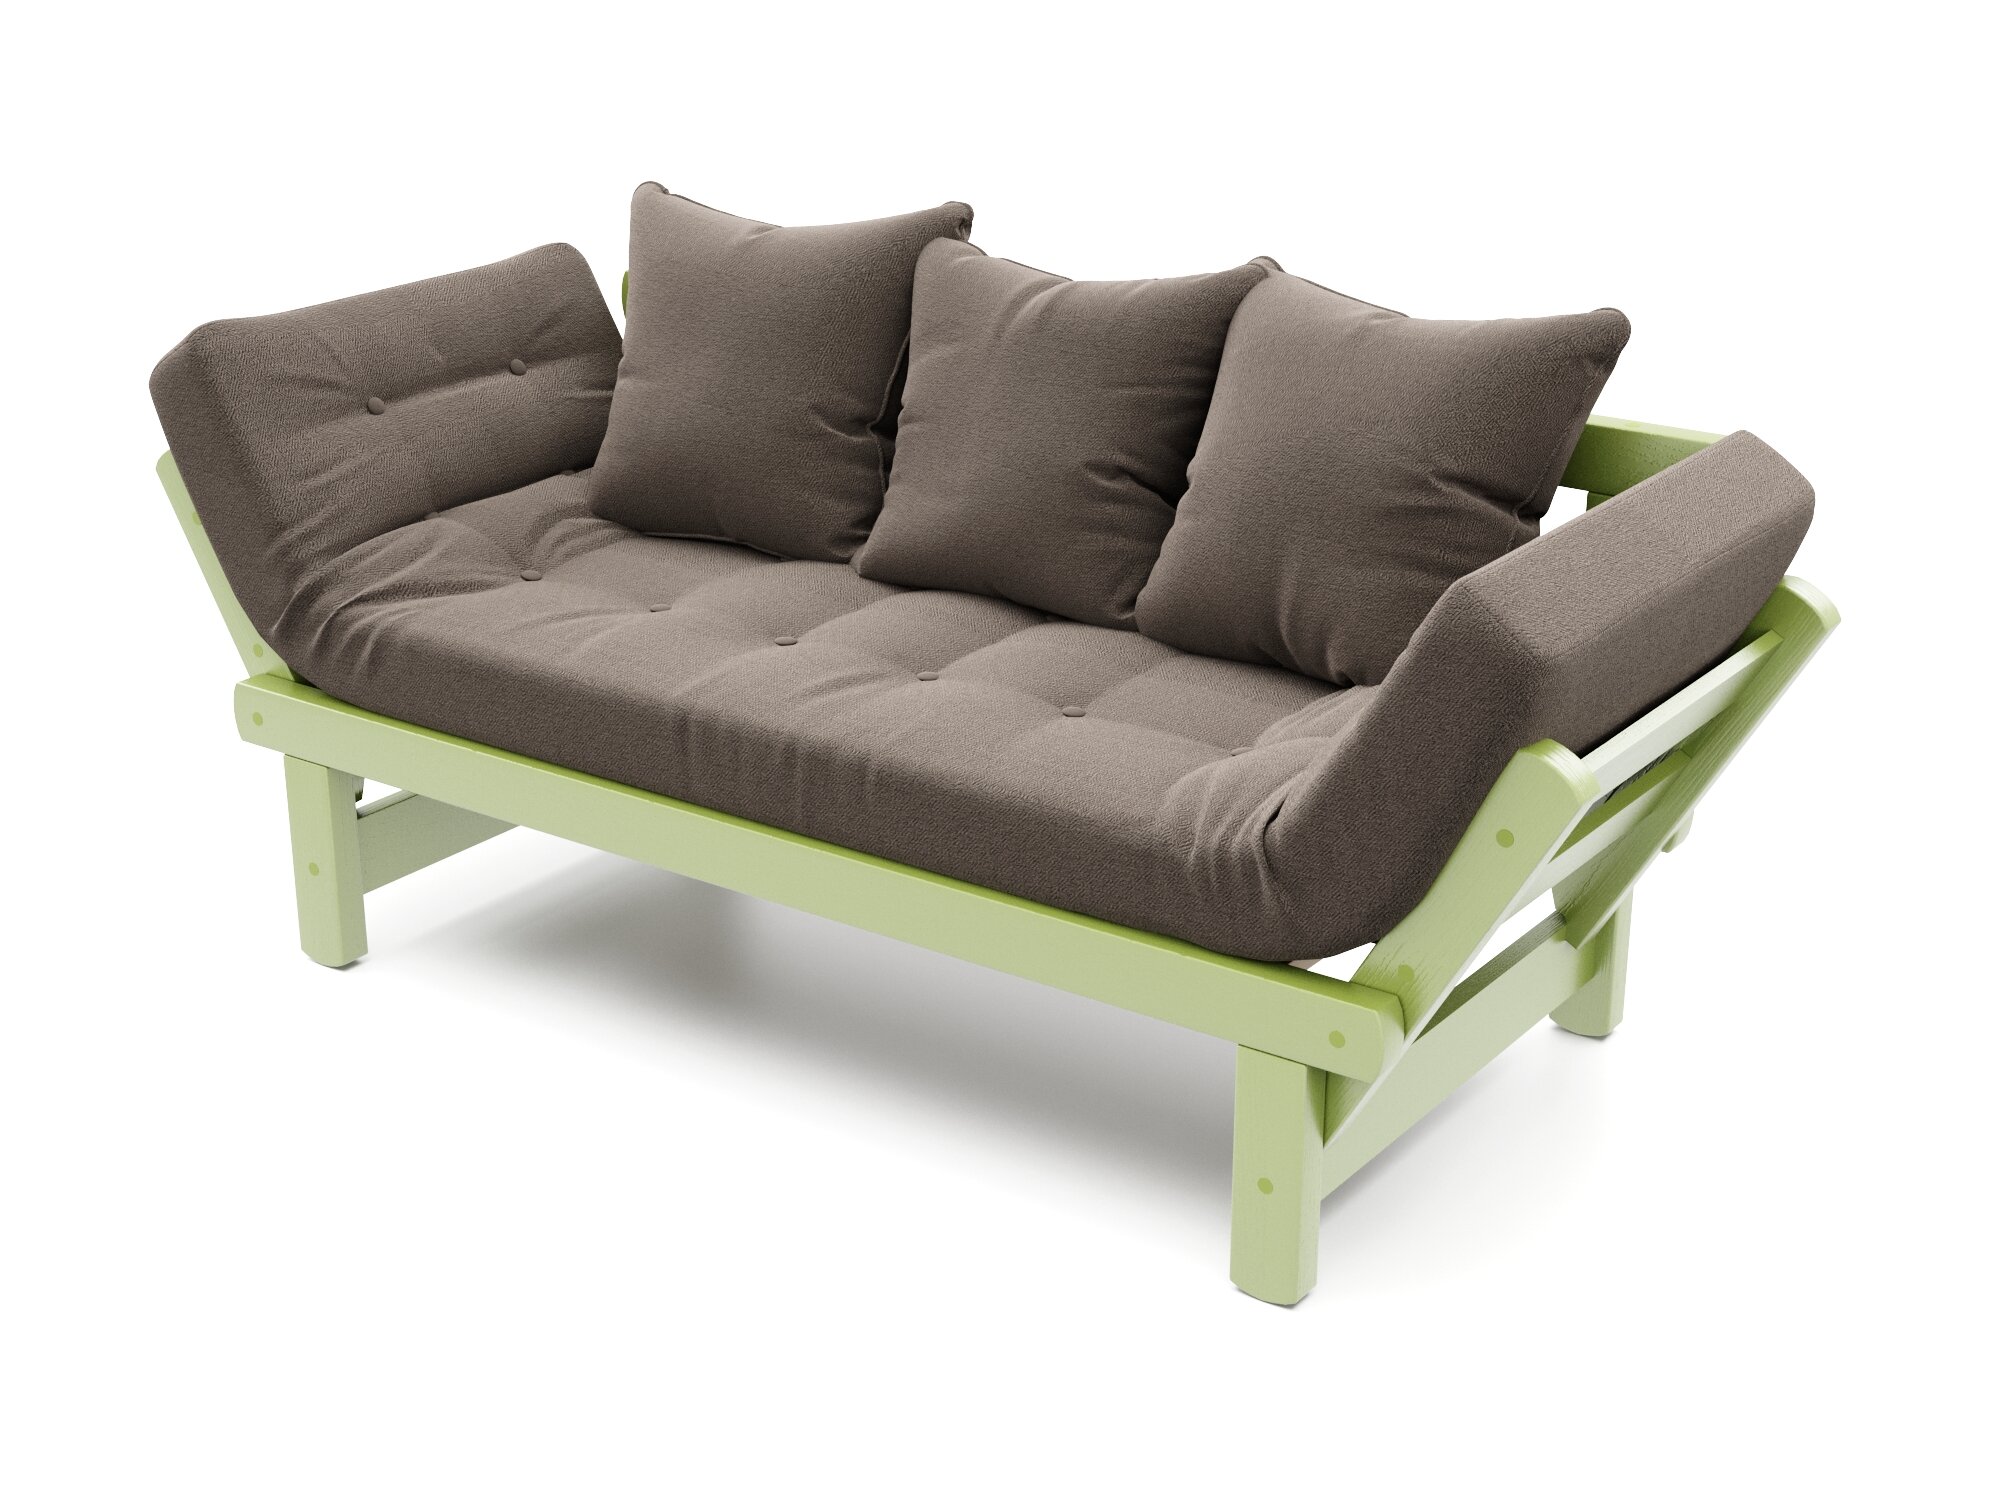 Садовый диван Soft Element Эльф-С, коричневый-зеленый, массив дерева, раскладной, с подушками, рогожка, на террасу, на веранду, для дачи, для бани